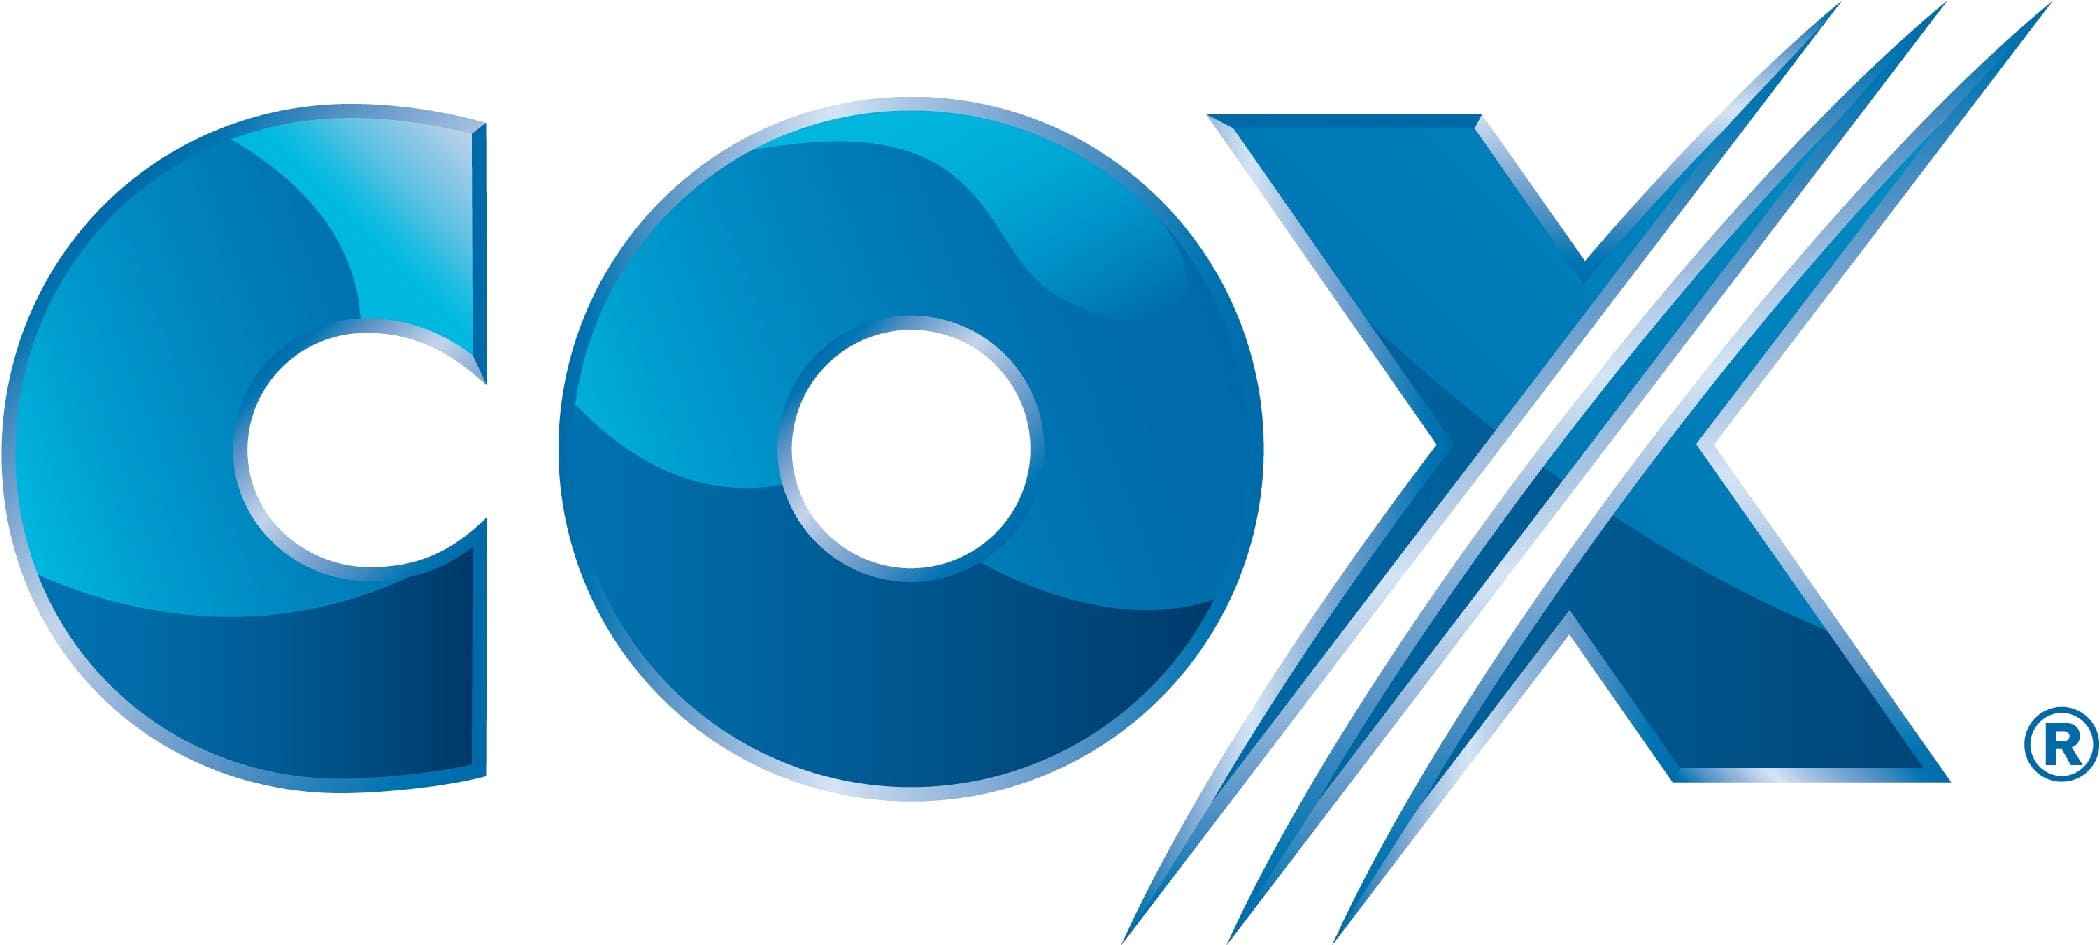 COX Logo [Communications]